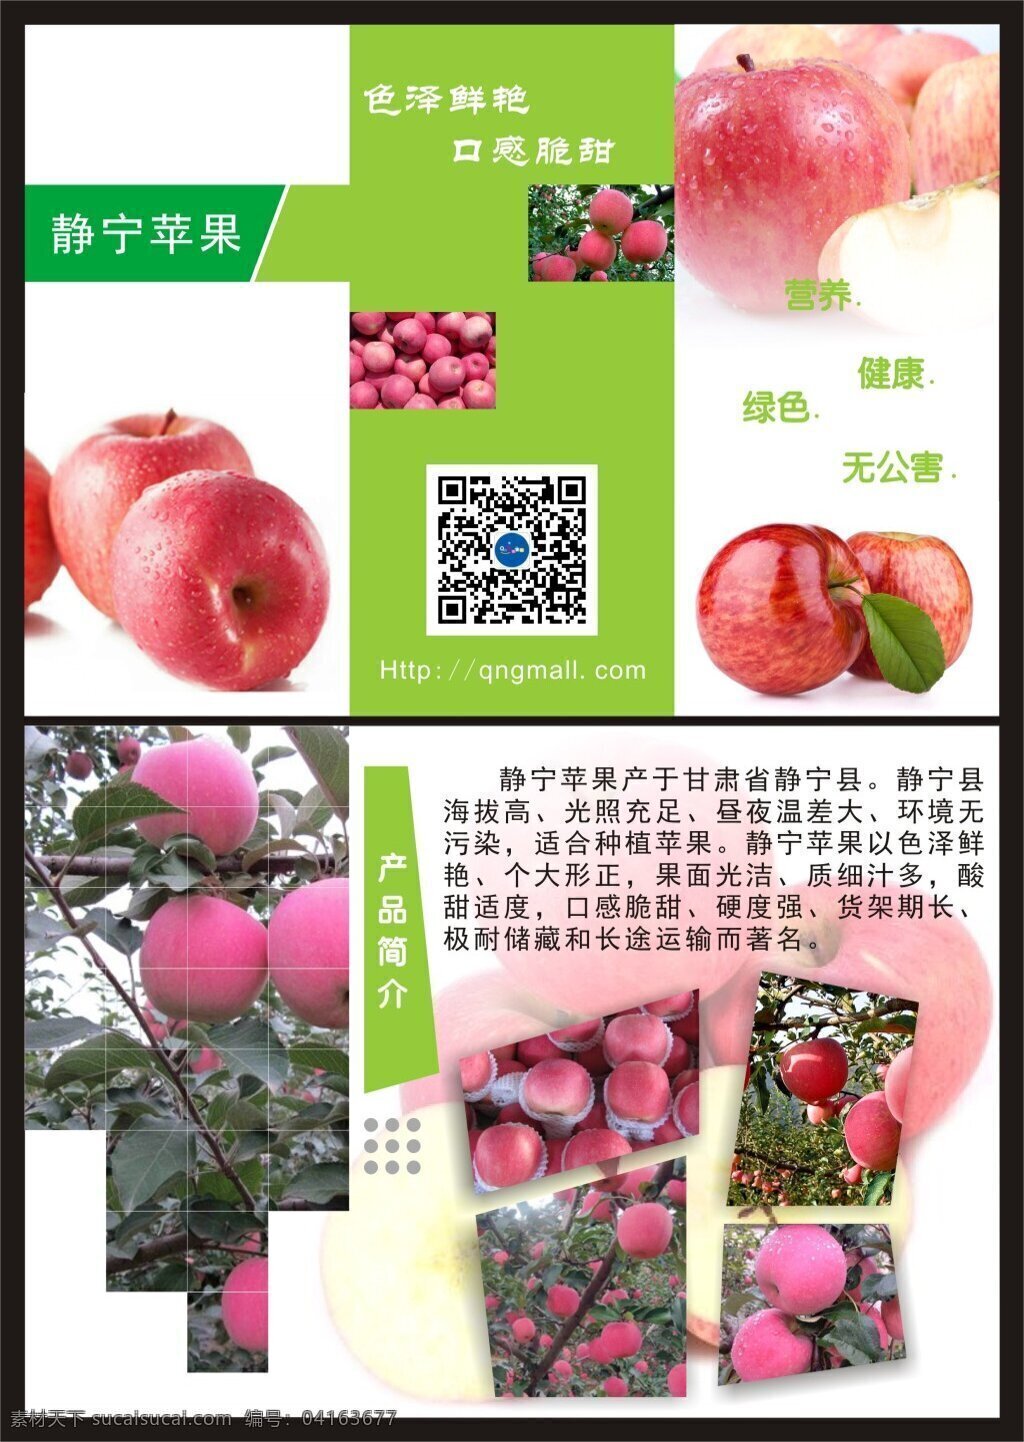 苹果宣传页 静宁 苹果 展示 宣传 营养 绿色 原产地